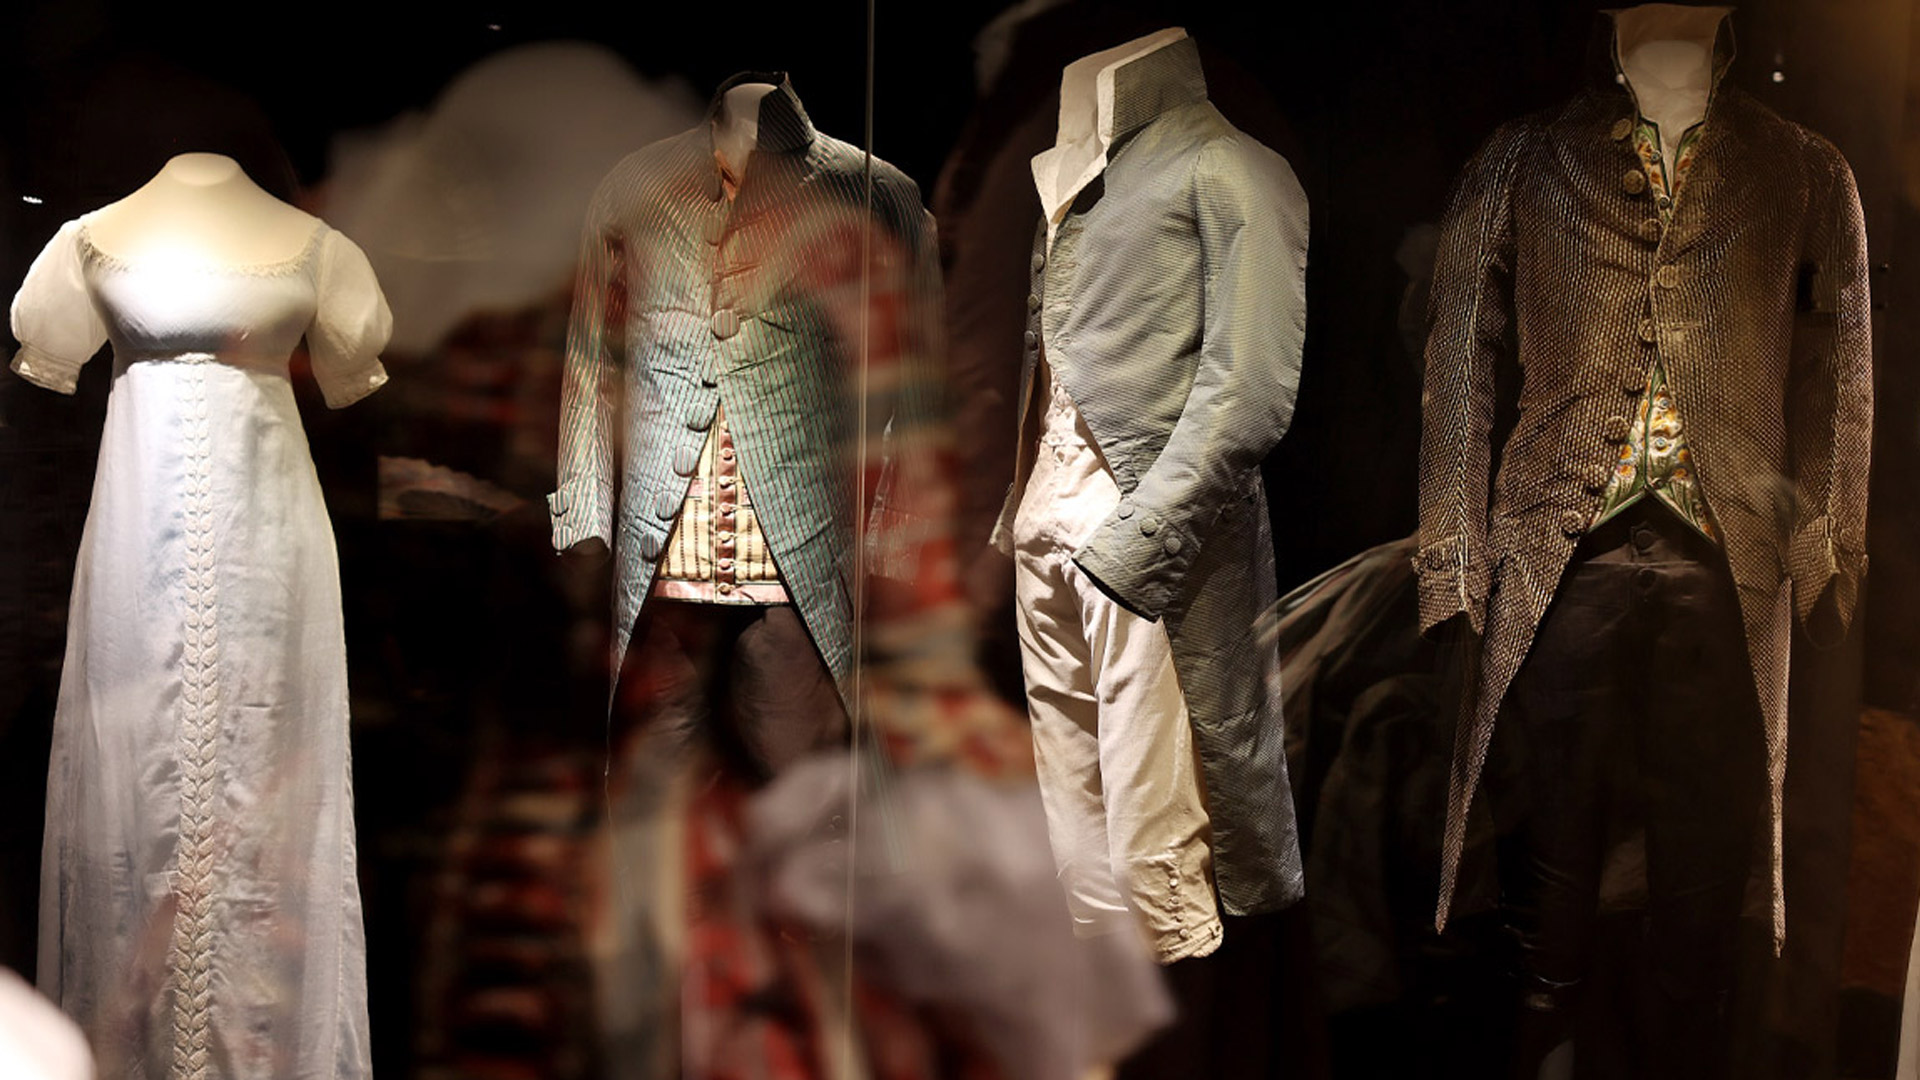 lbi le musée de la Mode, accessoires, vêtements, exposition thématique "10 ans"- une collection Dominique Miraille